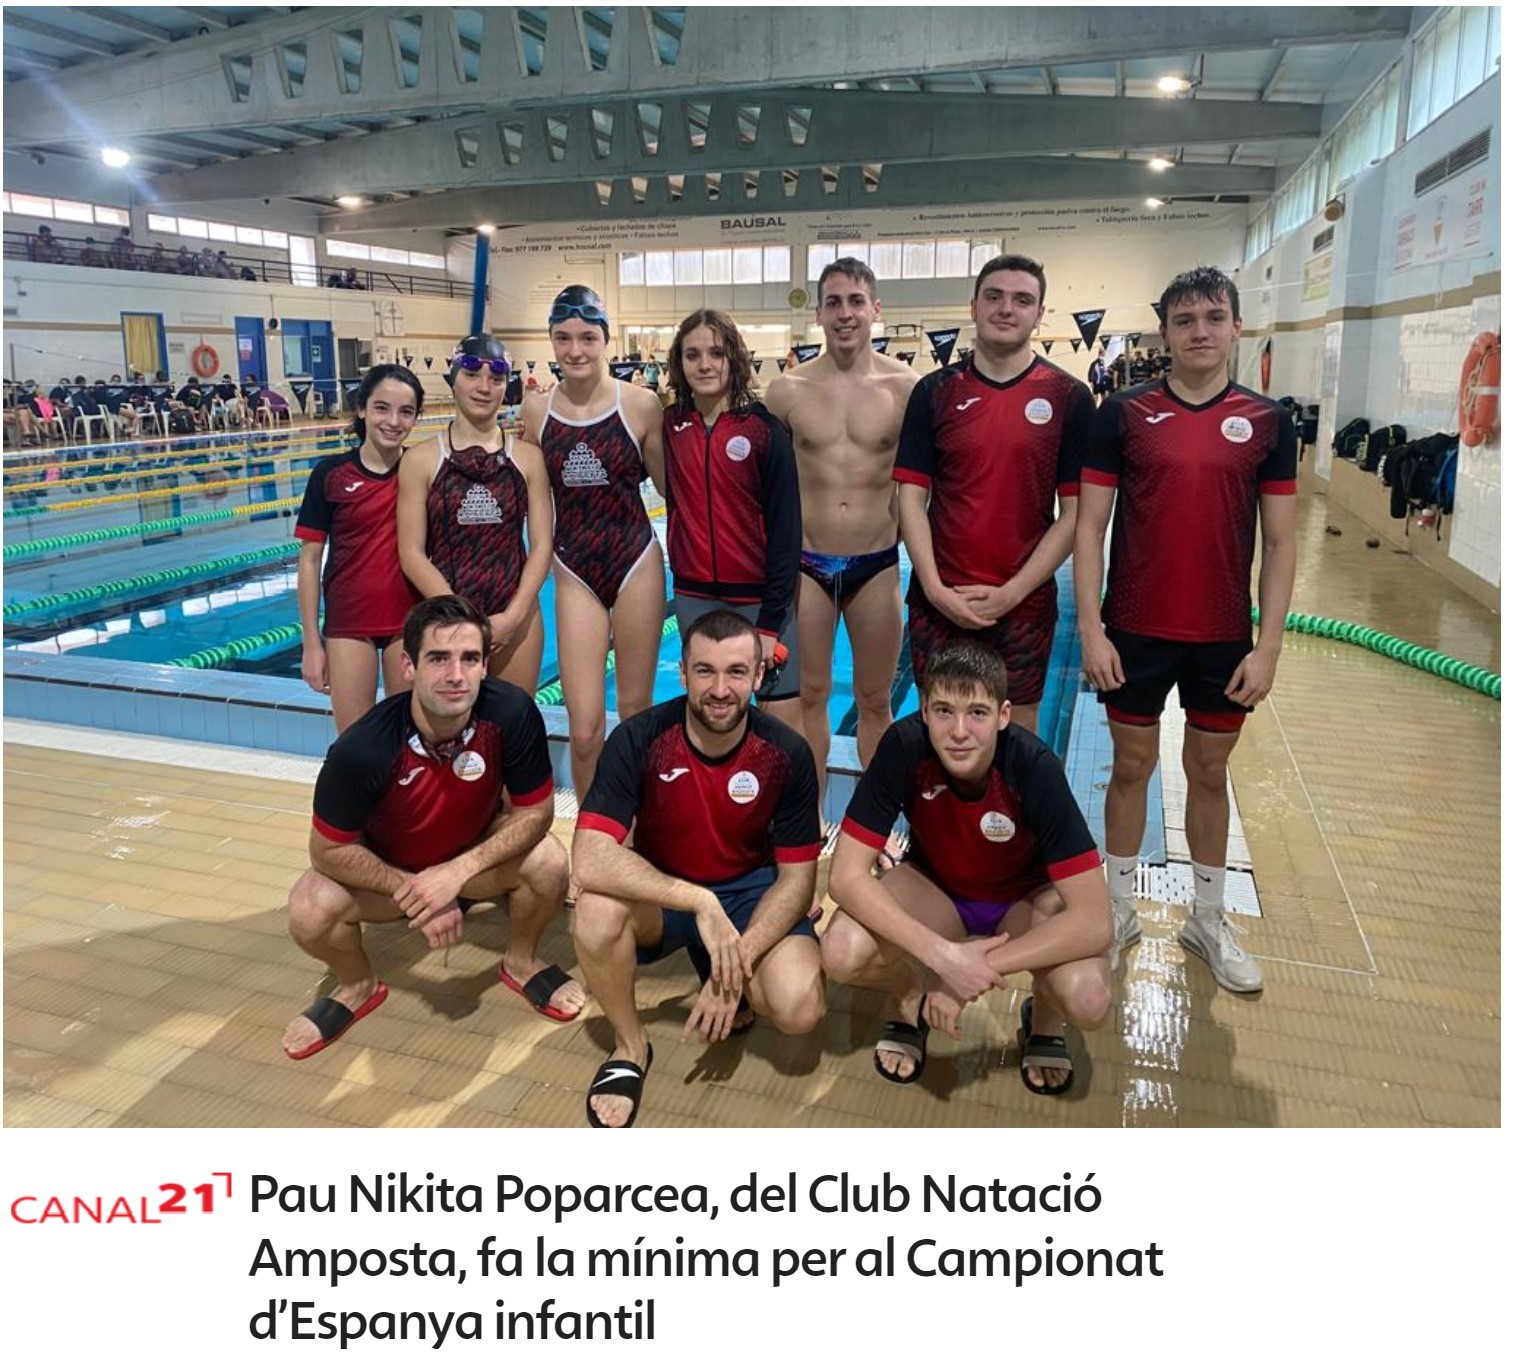 NOTÍCIA CANAL 21, PAU NIKITA POPARCEA, del Club Natació Amposta, fa la mínima per al Campionat d’Espanya infantil